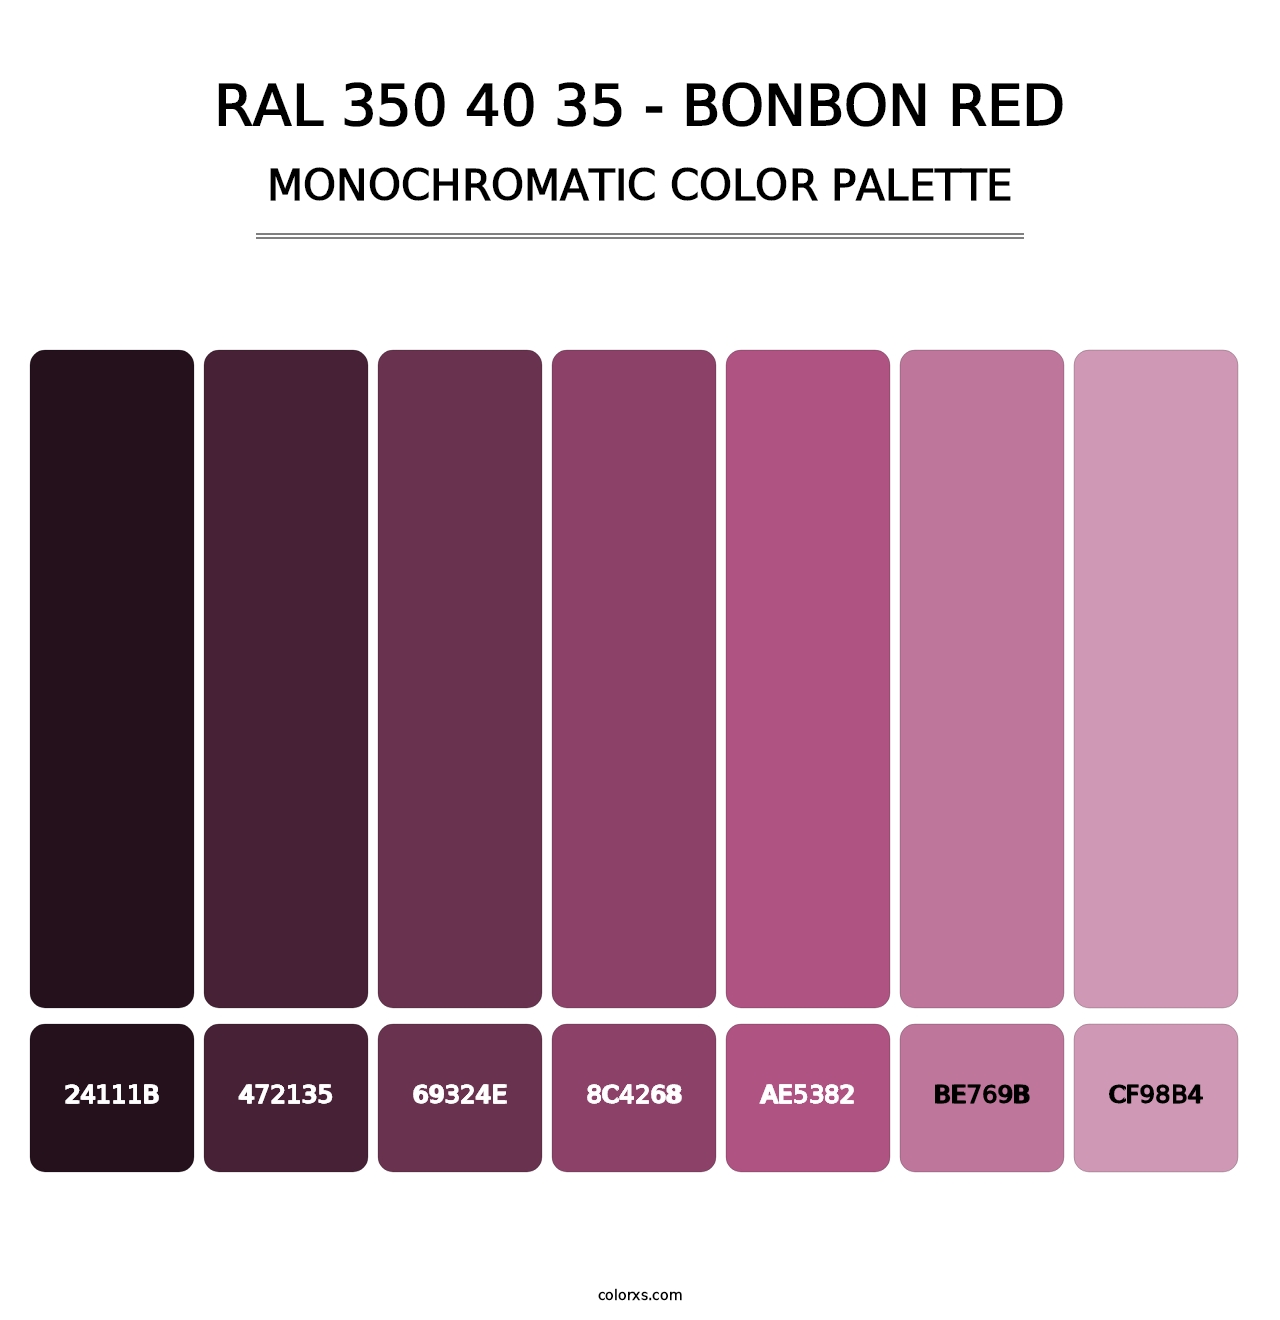 RAL 350 40 35 - Bonbon Red - Monochromatic Color Palette